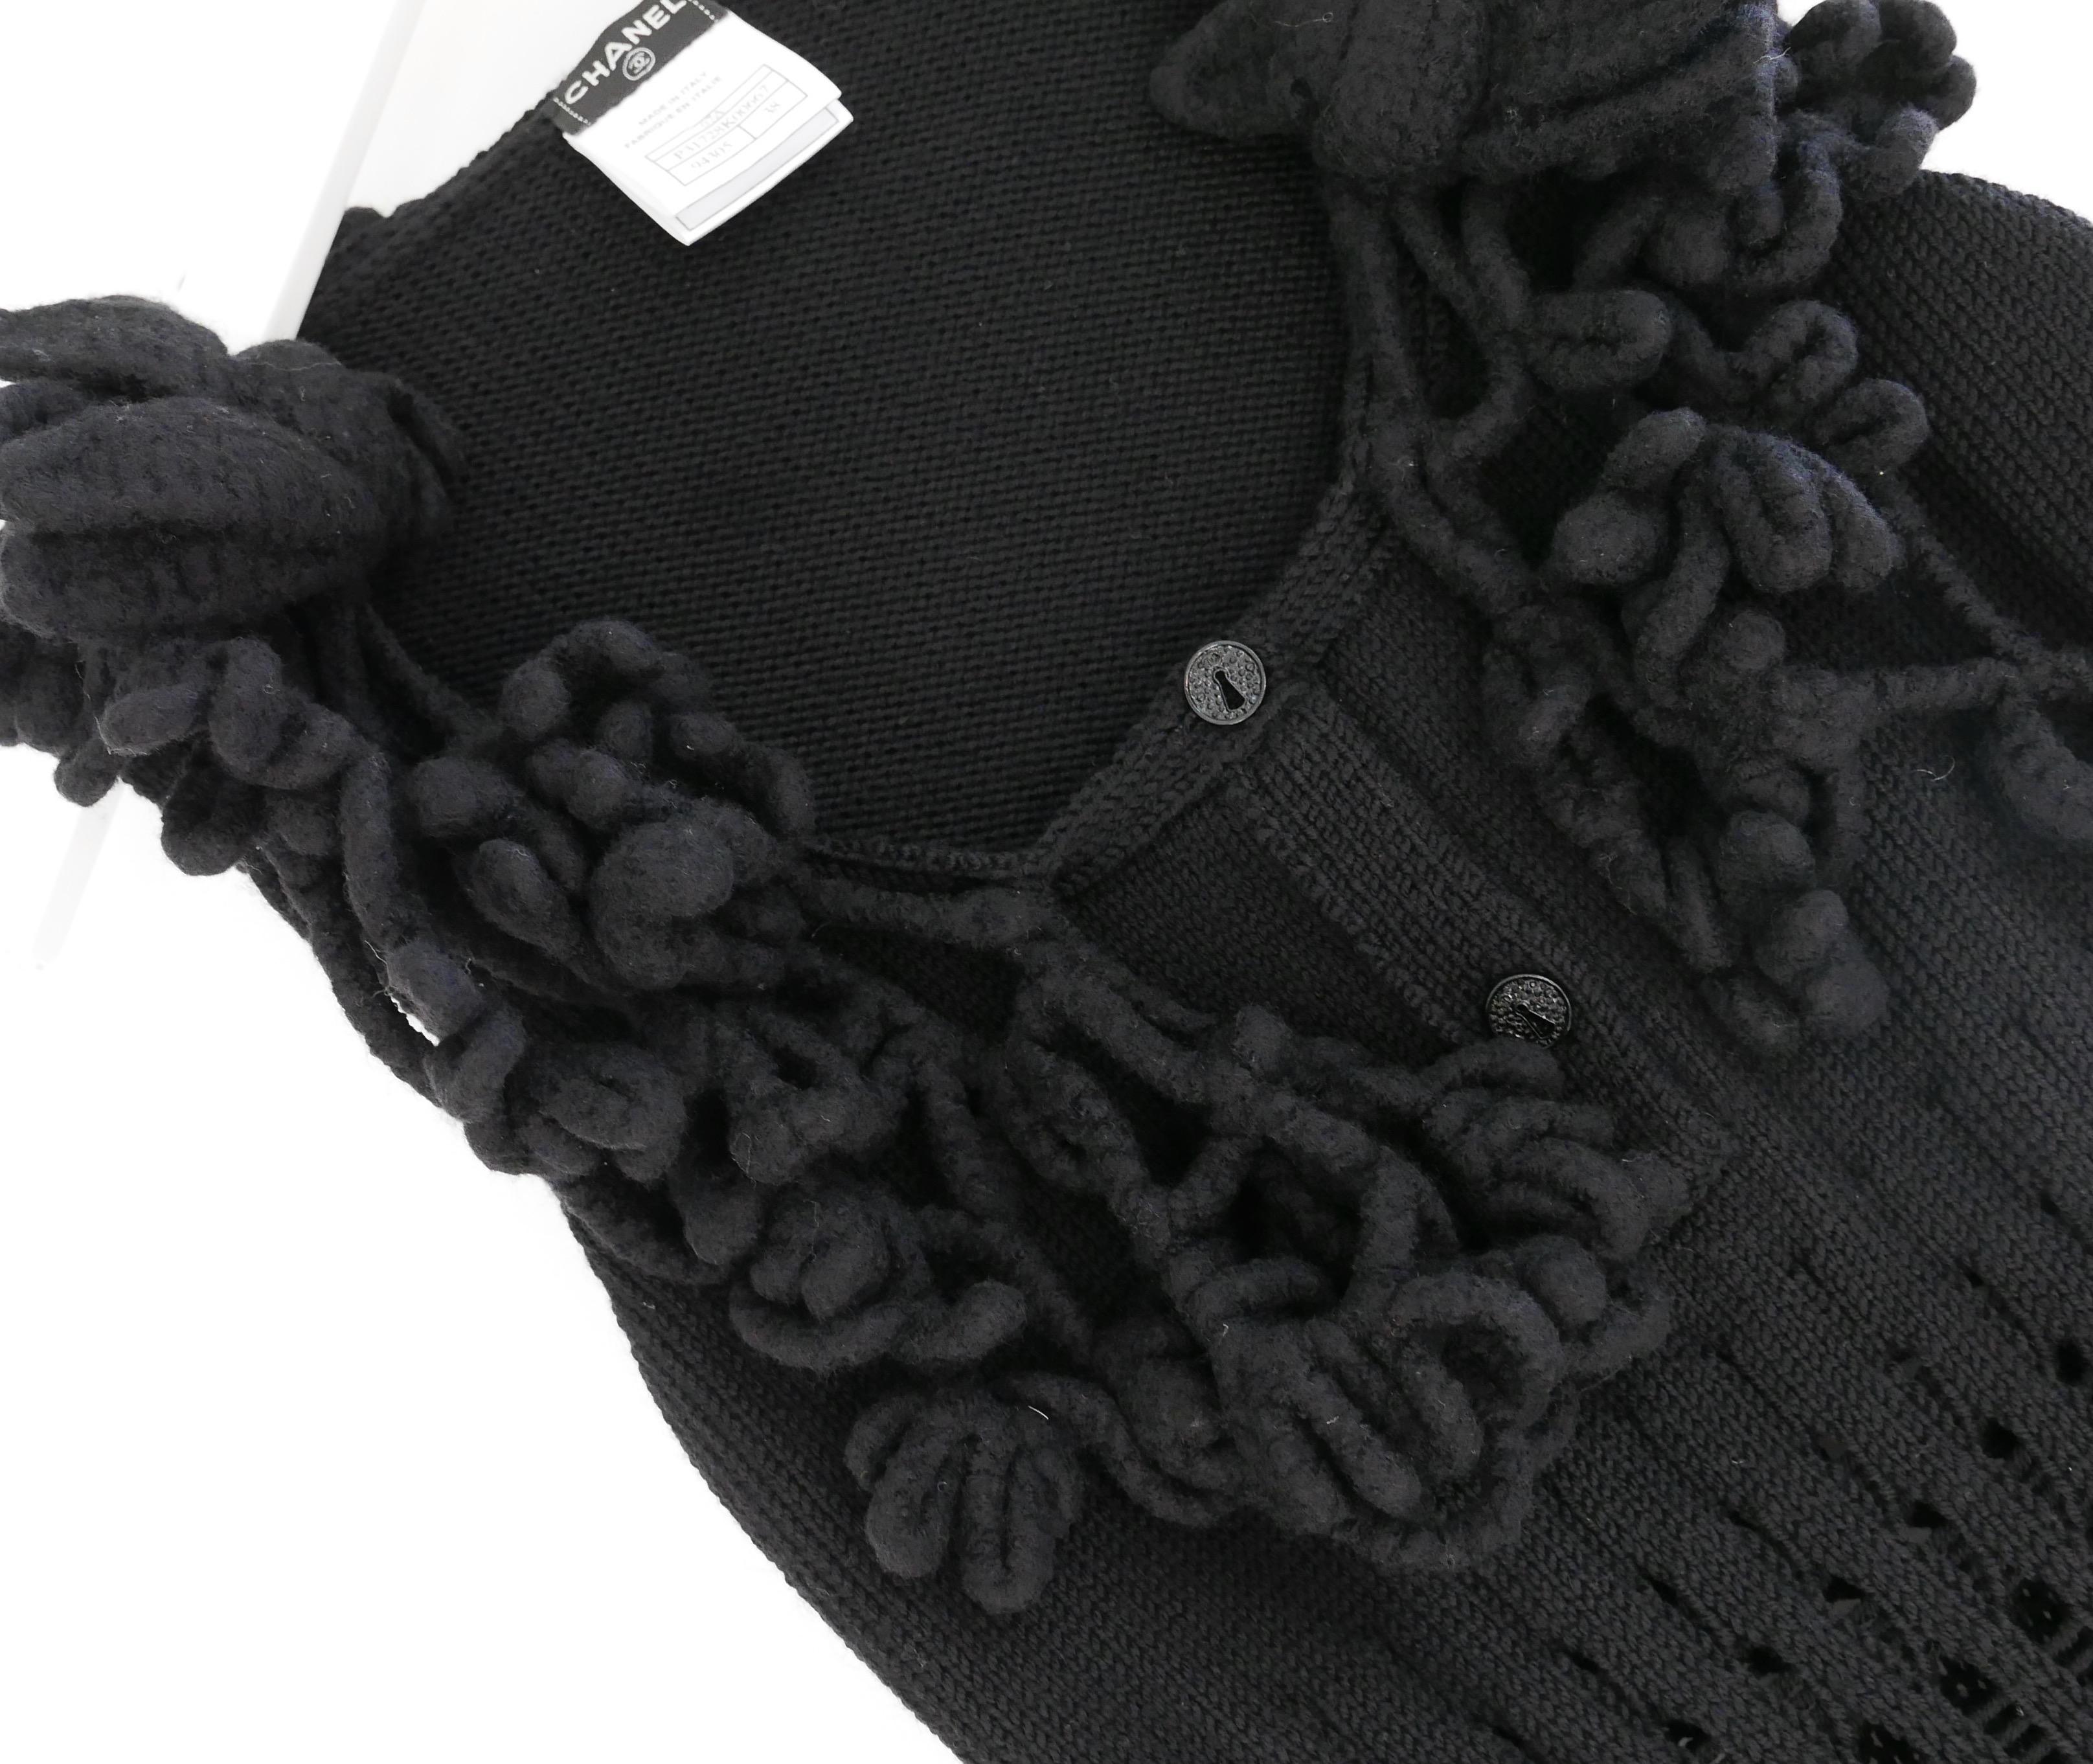 Wunderschöner ärmelloser Pullover von Chanel aus der Herbstkollektion 2007. Ungetragen. Es ist aus weicher schwarzer Wolle und Kaschmir (70:30) mit einem schicken Rippenstrick gefertigt und hat eine plastische florale Wollverzierung am Hals und 2